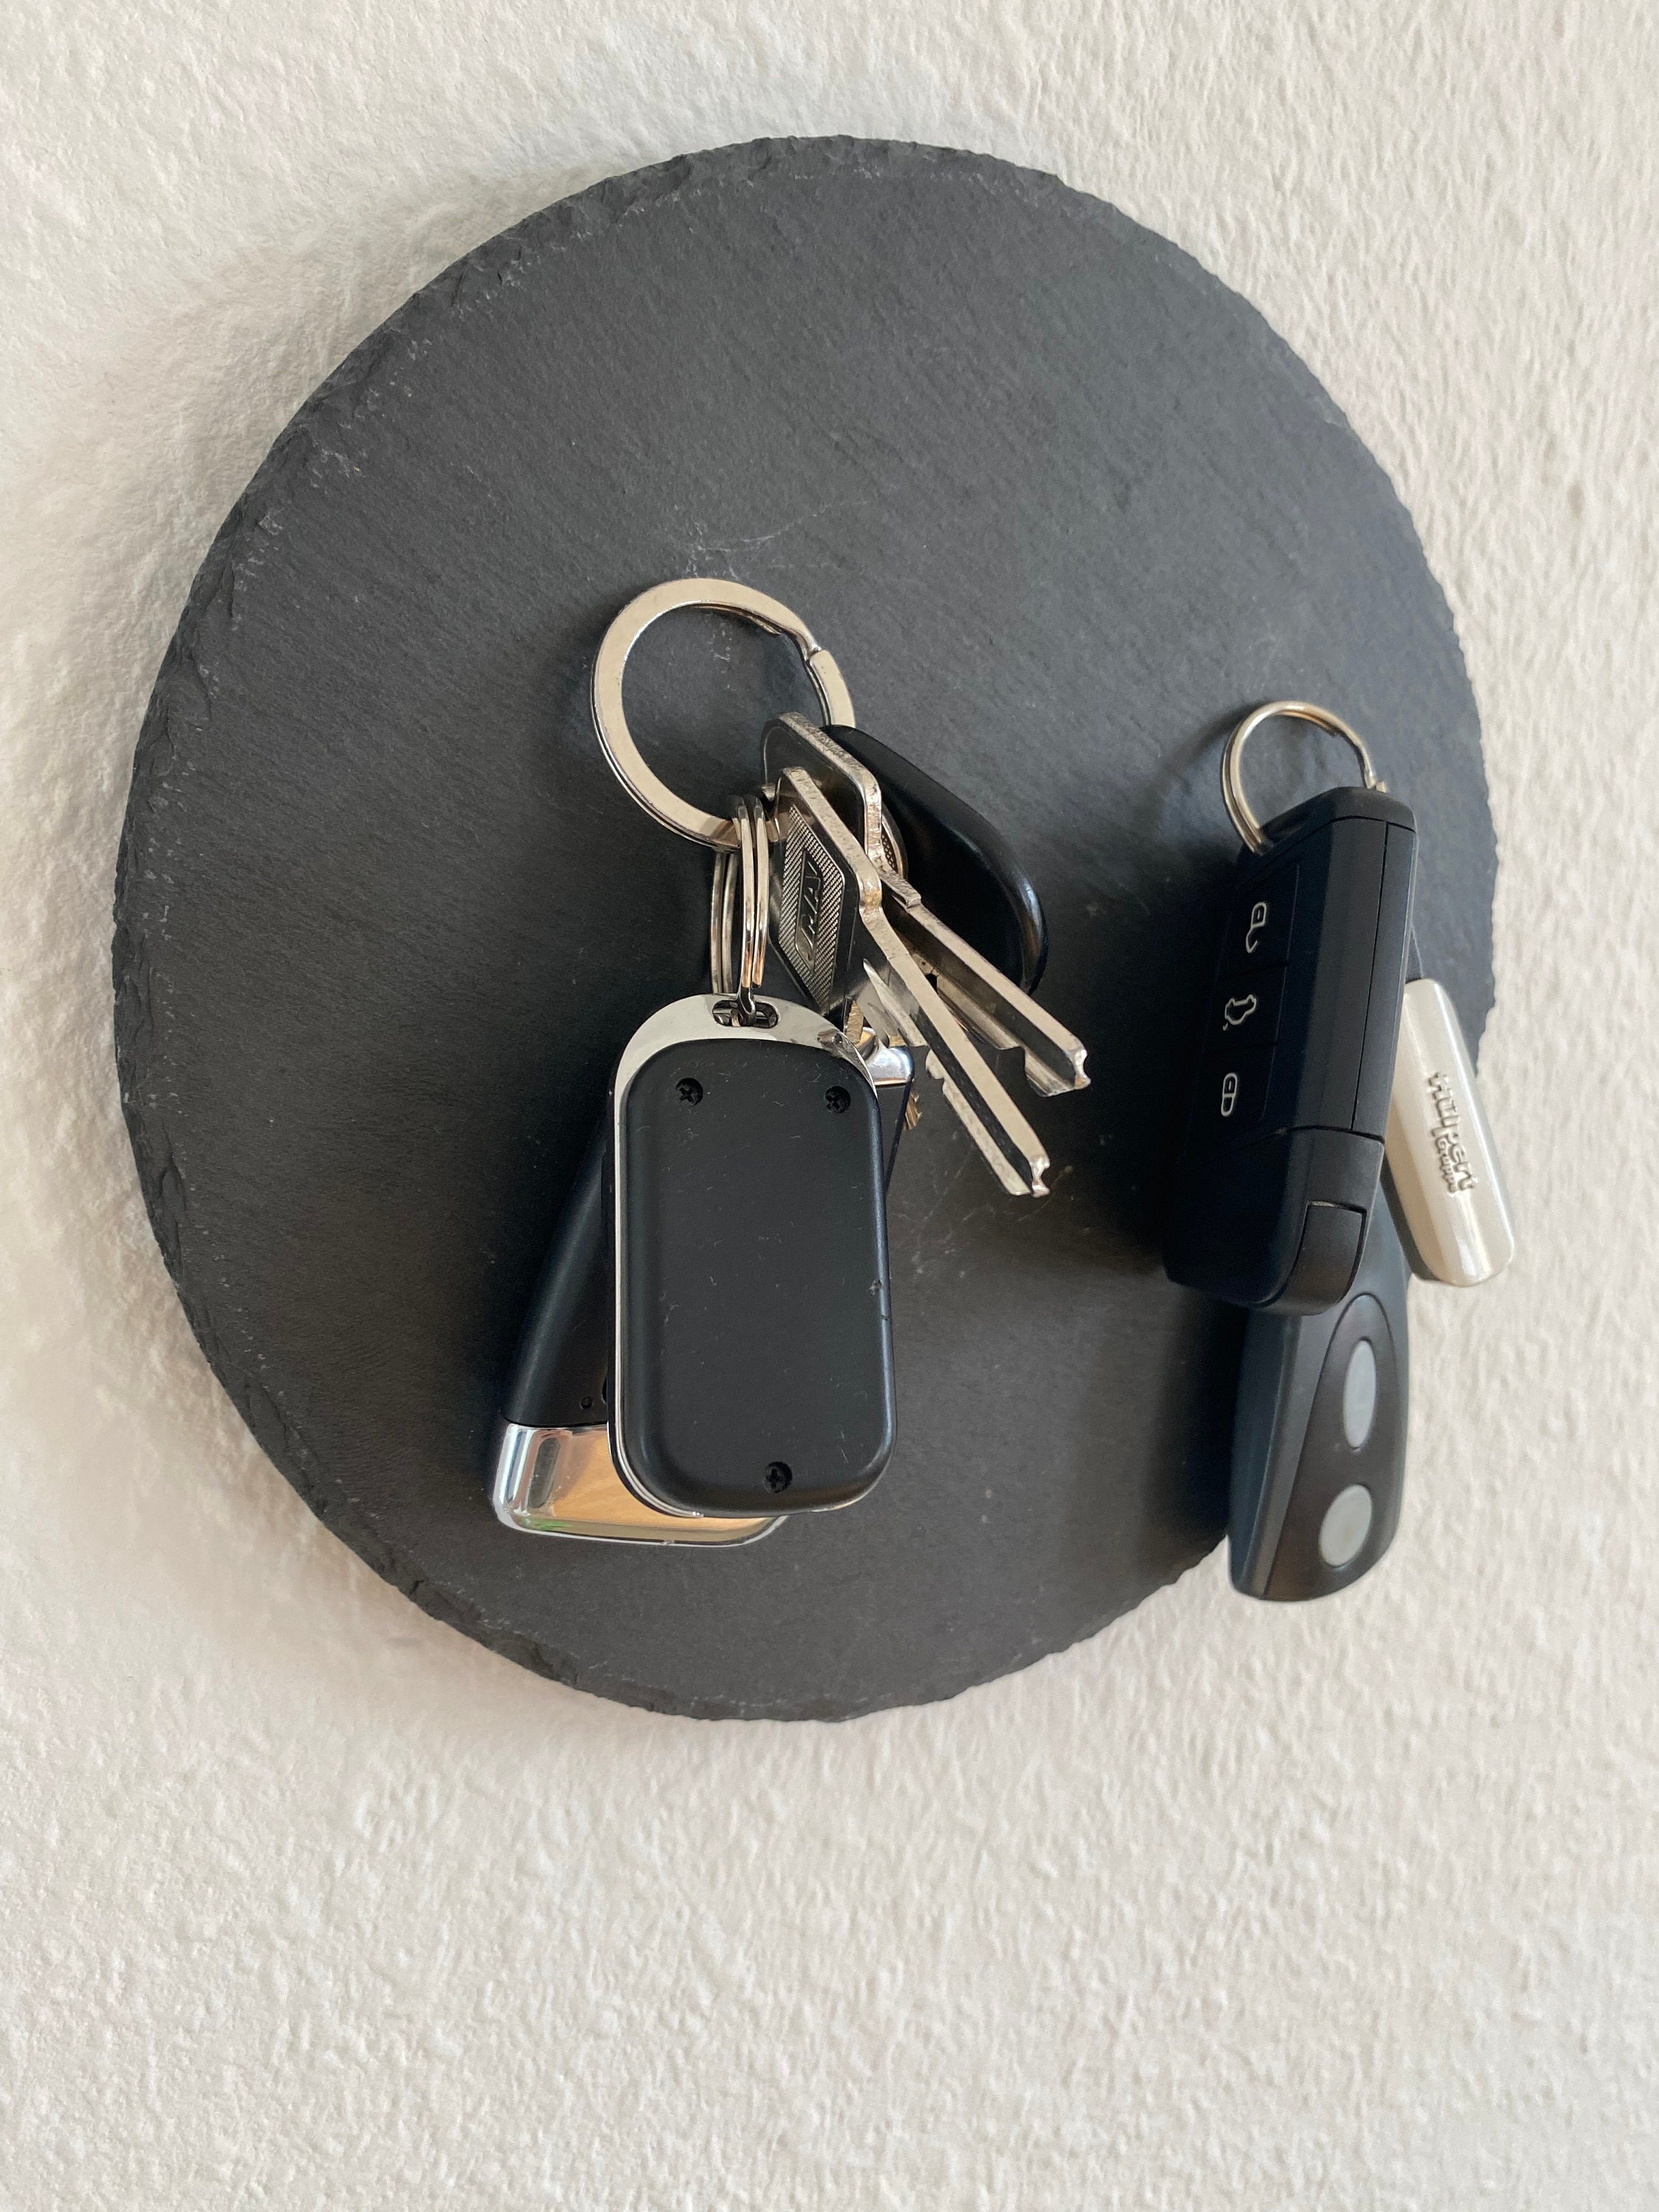 Magnetschlüsselhalter Magnet Zunge 8 cm x 5,5 cm x 8,9 cm Schlüsselhaken  Wandschlüsselhalter